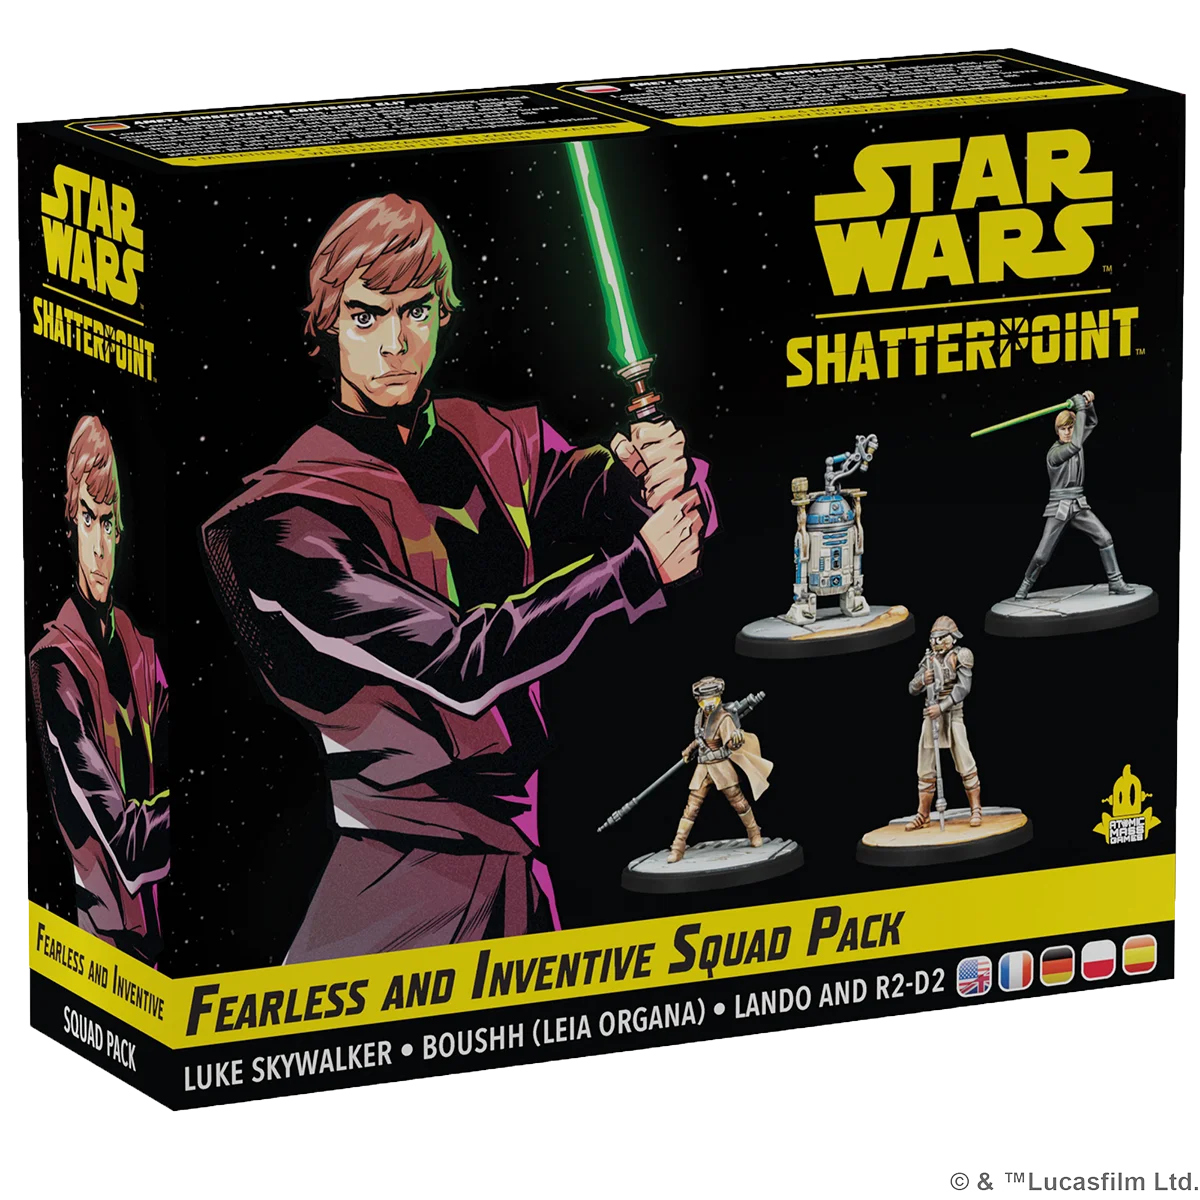 Star Wars: Shatterpoint – Fearless and Inventive Squad Pack (“Furchtlos und erfinderisch”)